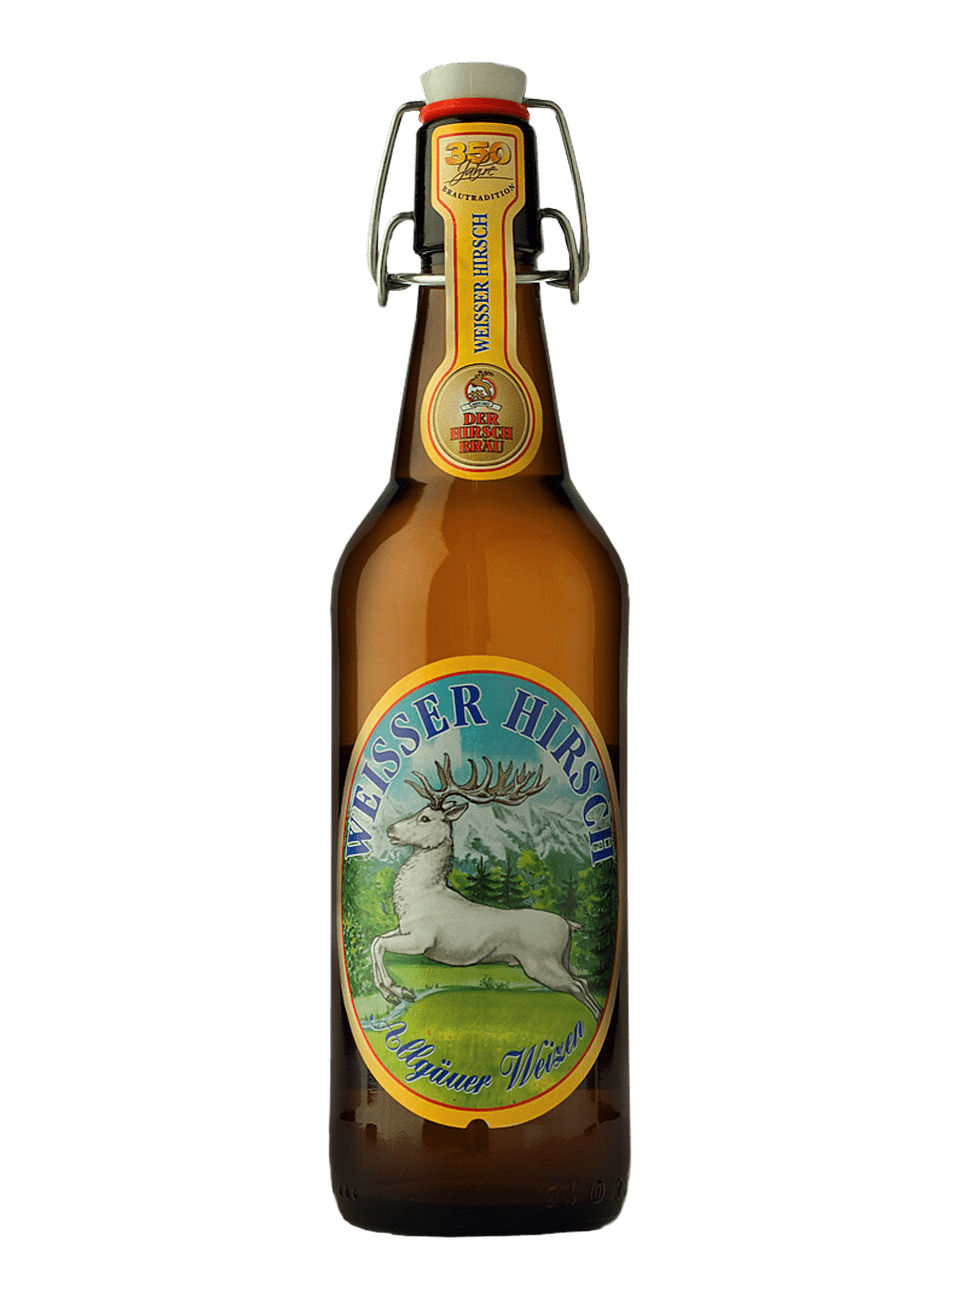 Пиво Белый олень  Хиршбрау Вайссер Хирш 0,5л с/б 5,2% нефильтрованное светлое пшеничное (20/360)